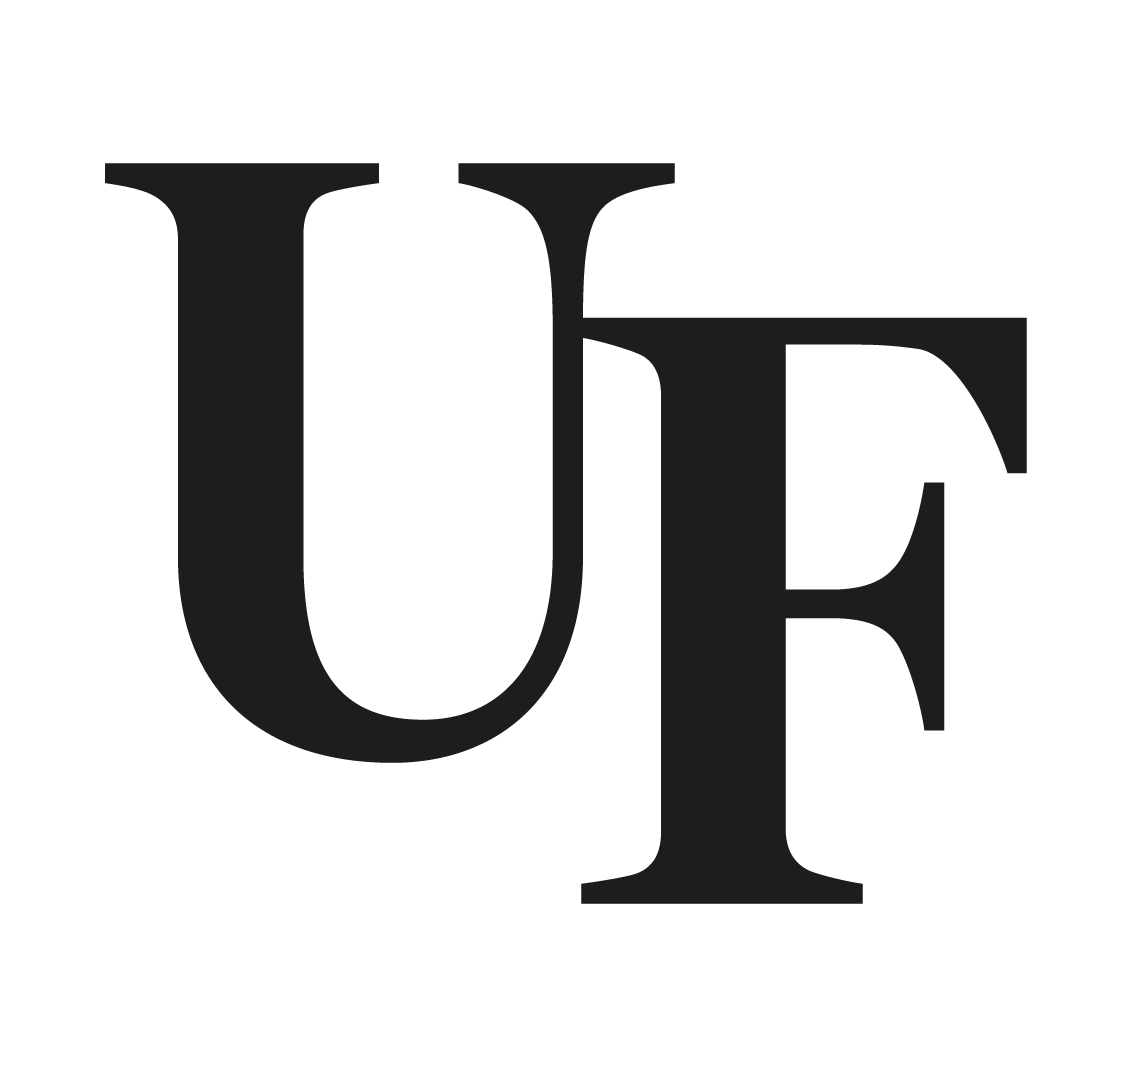 United Finishes Logo